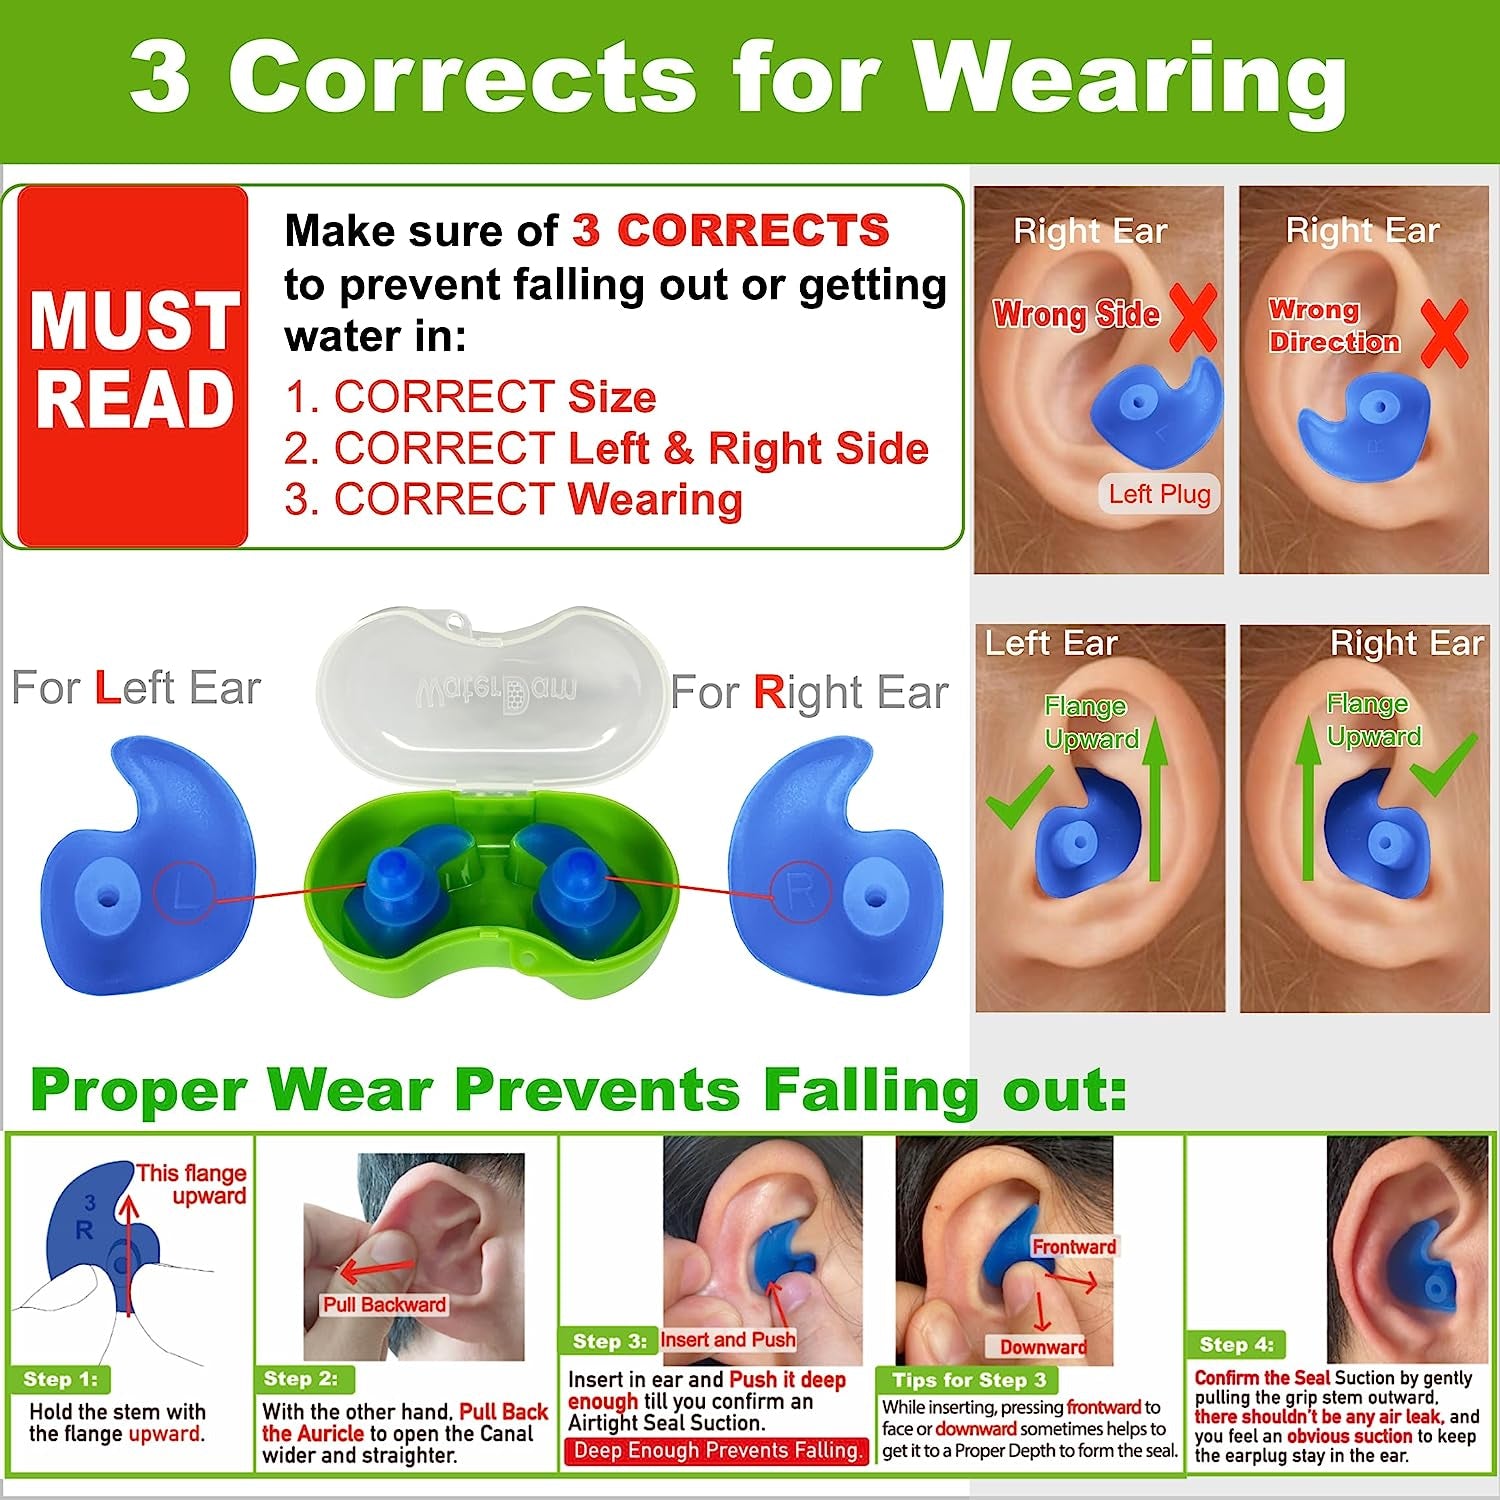 Waterdam Swimming Ear Plugs Great Waterproof Ultra Comfy Earplugs Prevent Swimmer'S Ear (Size 1+2: Toddlers (Blue) & Small&Medium Ear Women Kids Teens (Green))